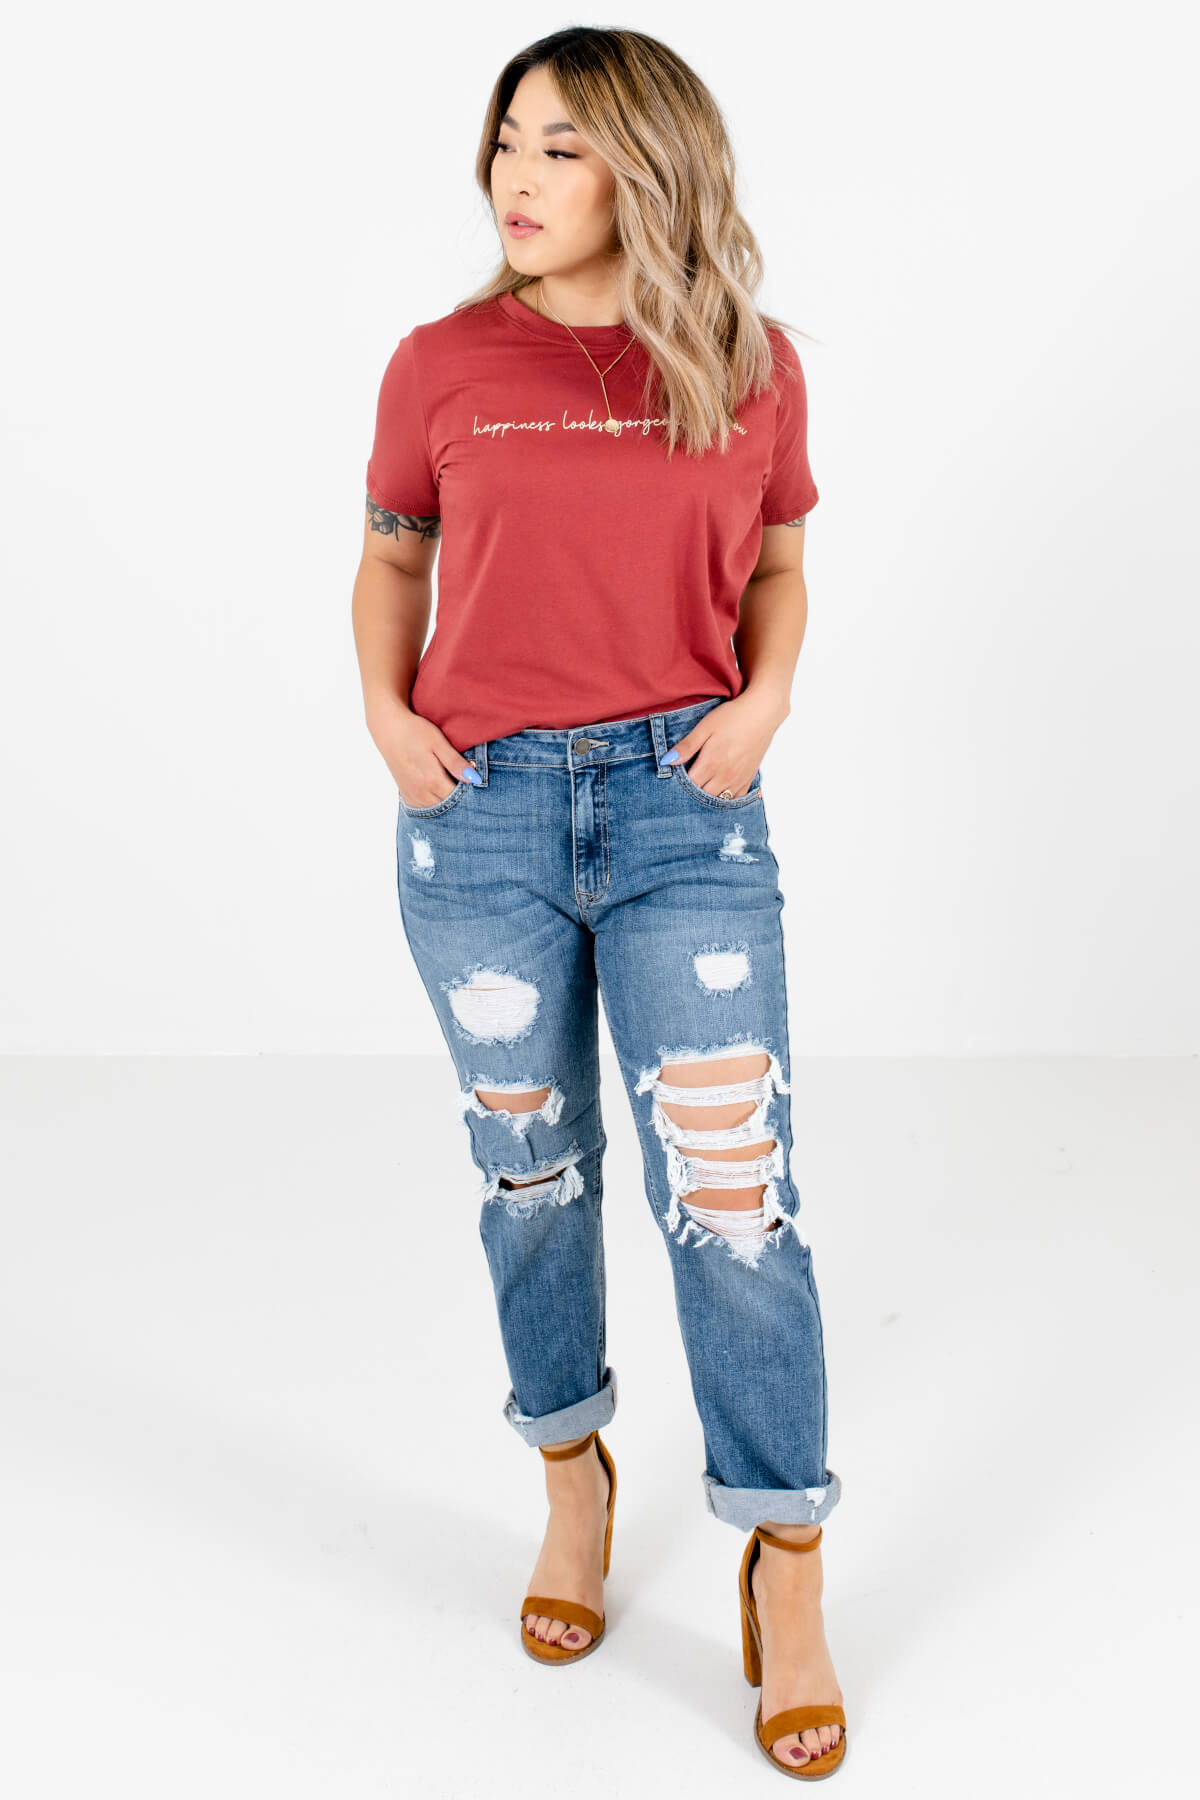 Women's Brick Red Round Neckline Boutique Graphic T-Shirt